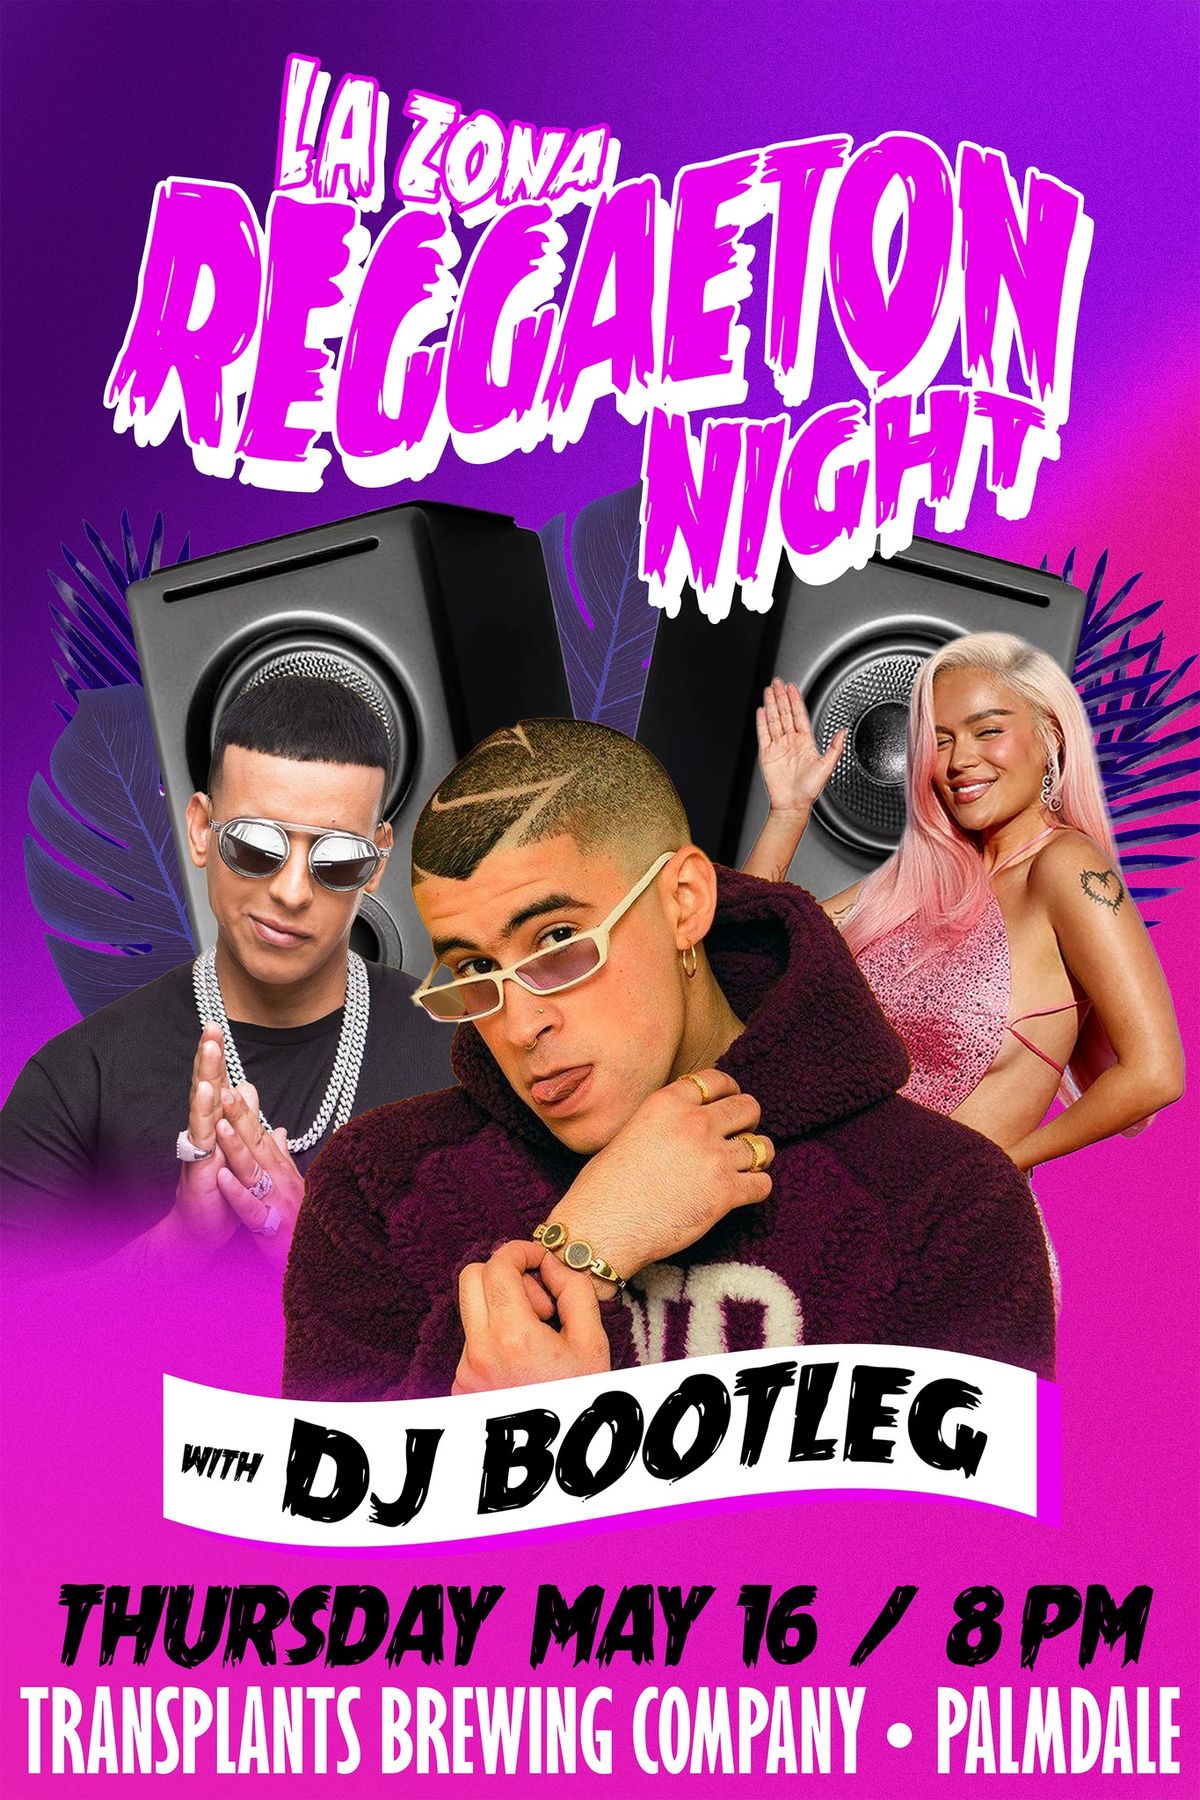 La Zona Reggaeton Night with DJ Bootleg